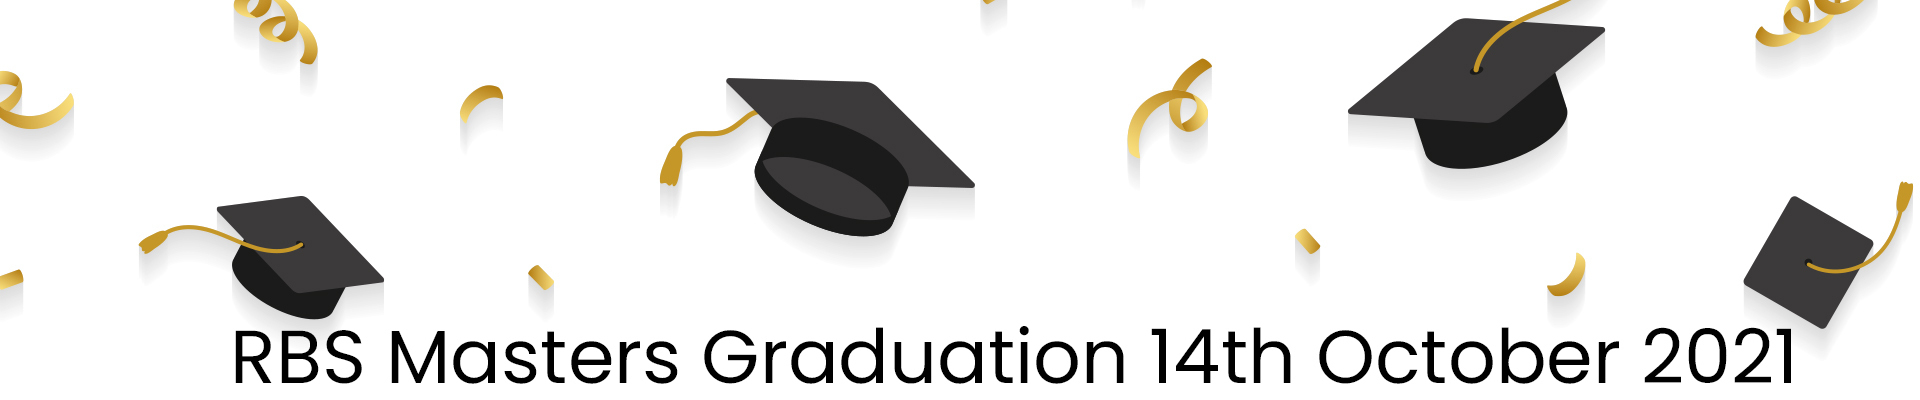 Master Graduation Ceremony October 14 2021